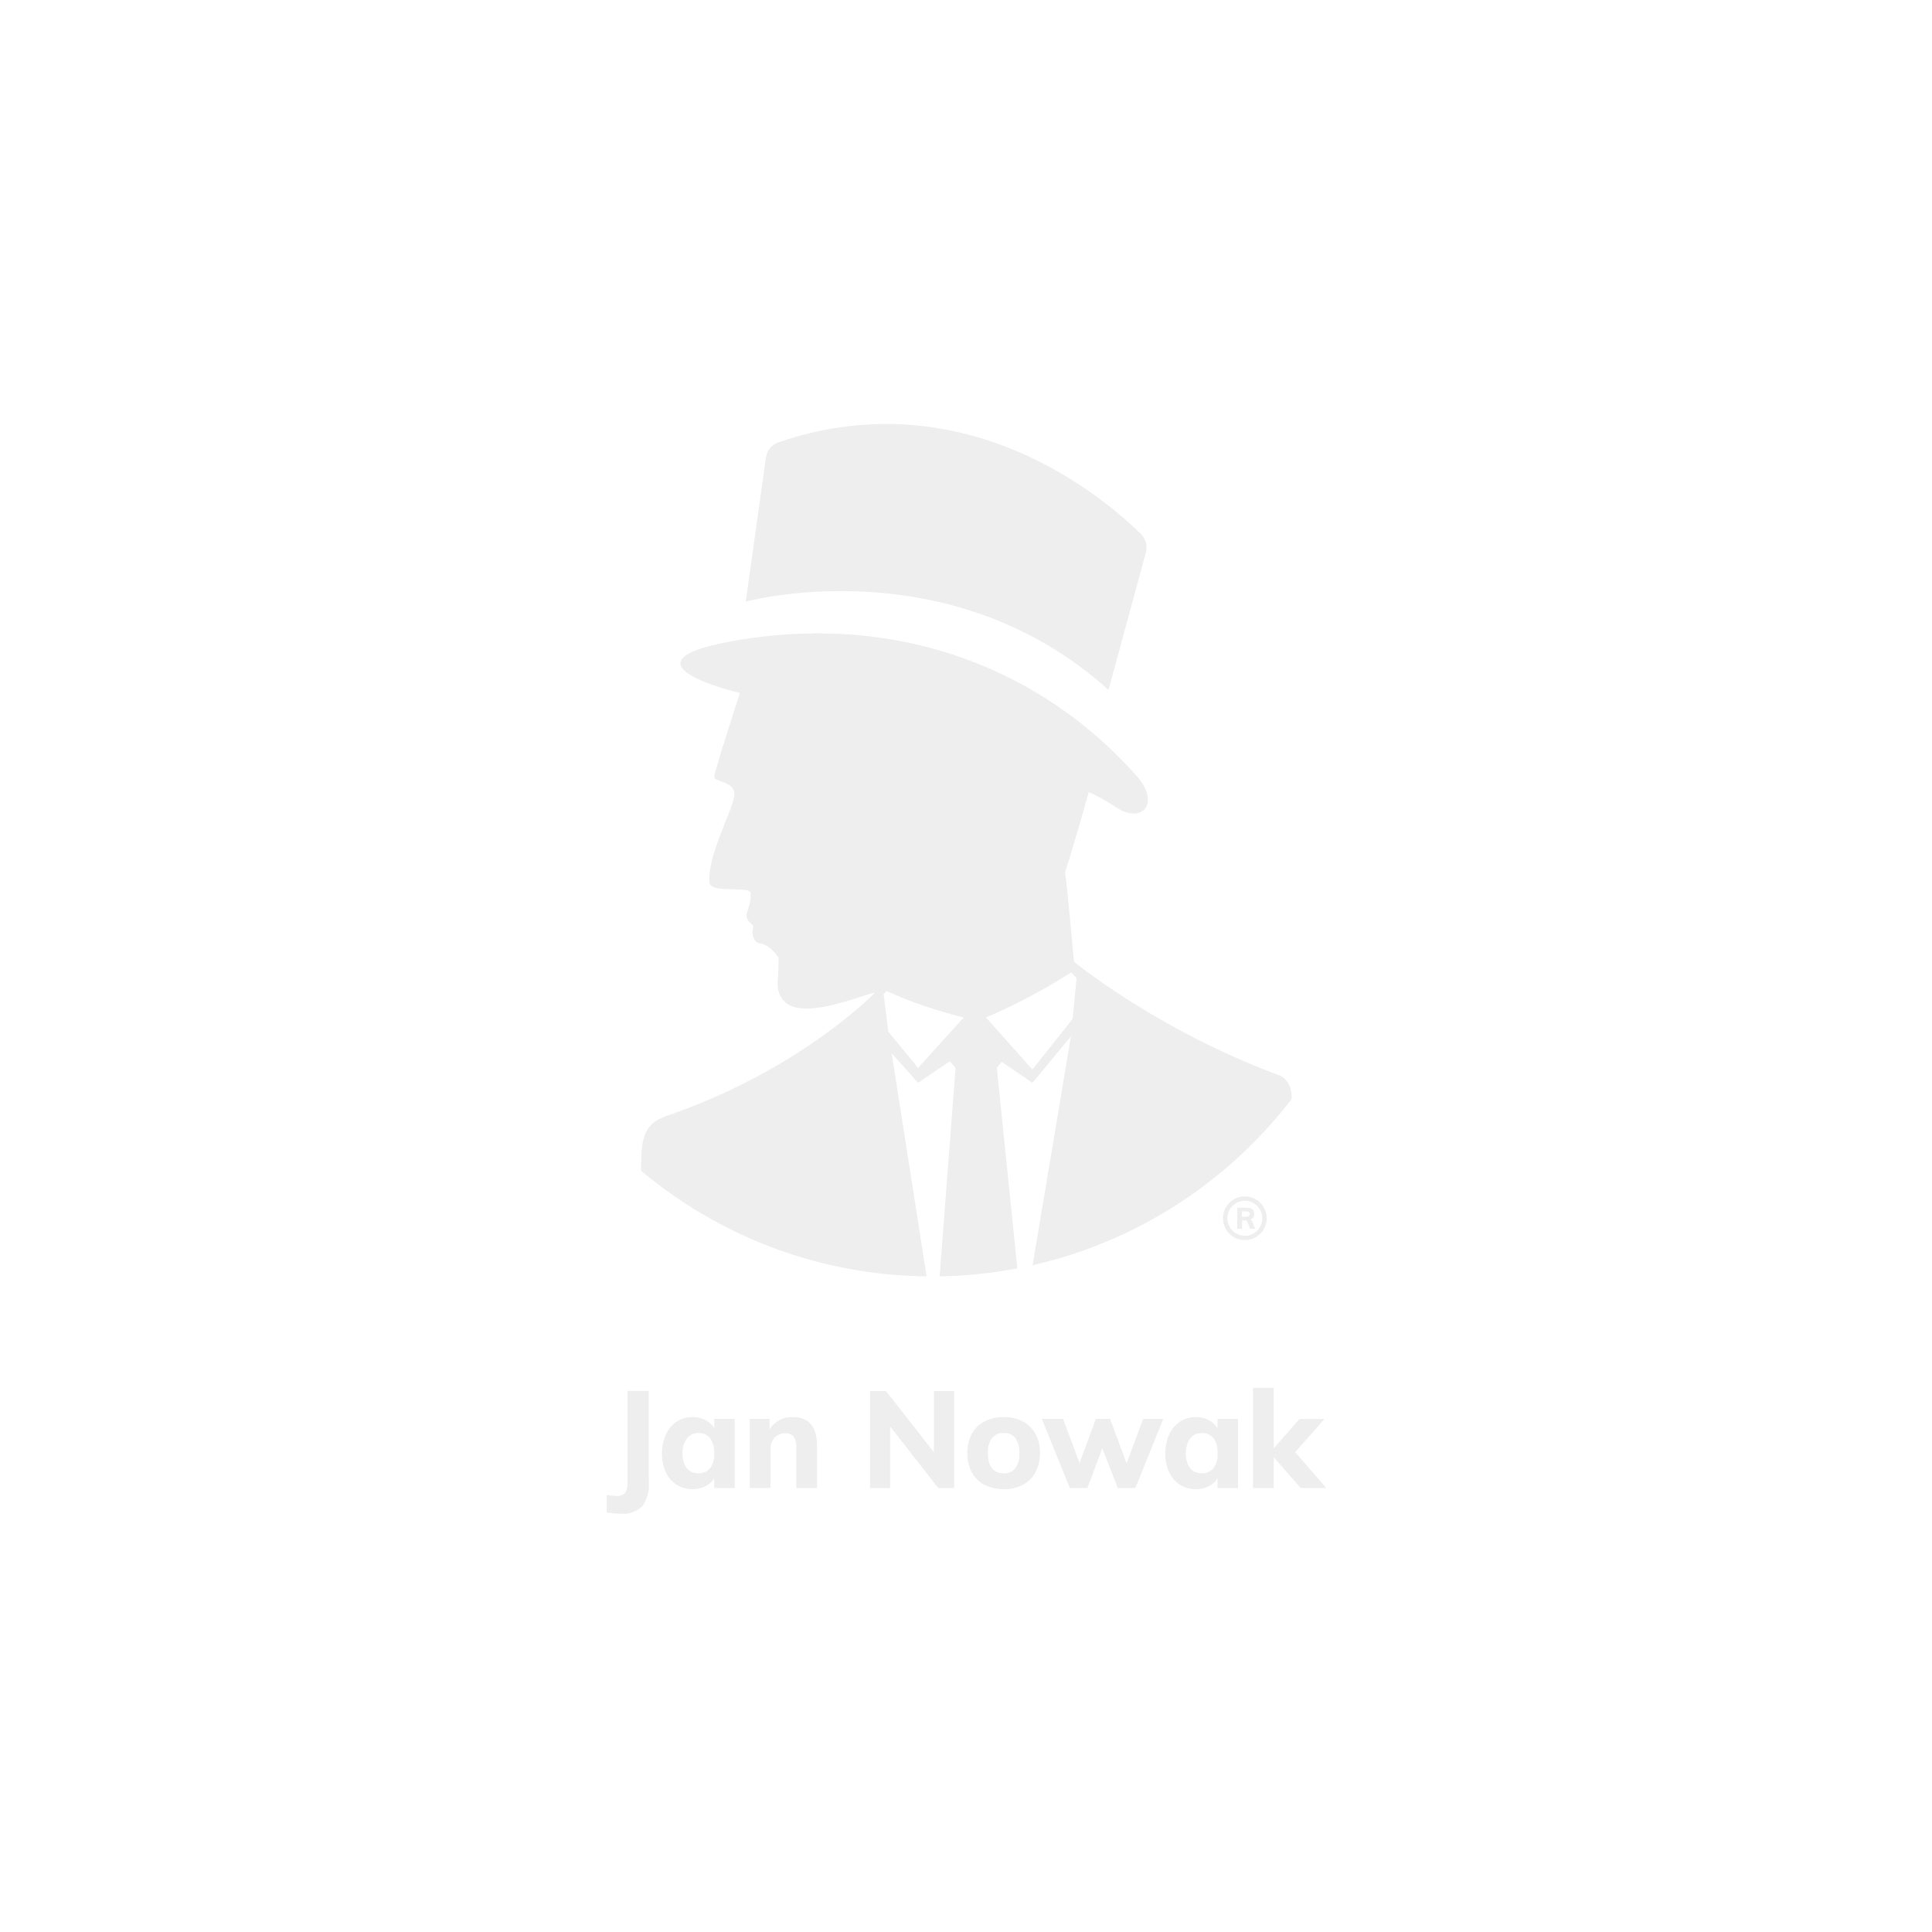 JAN NOWAK model FILIP II 900x1850x400 biurowa szafa metalowa z sejfem na akta i dokumenty: antracytowo-biała